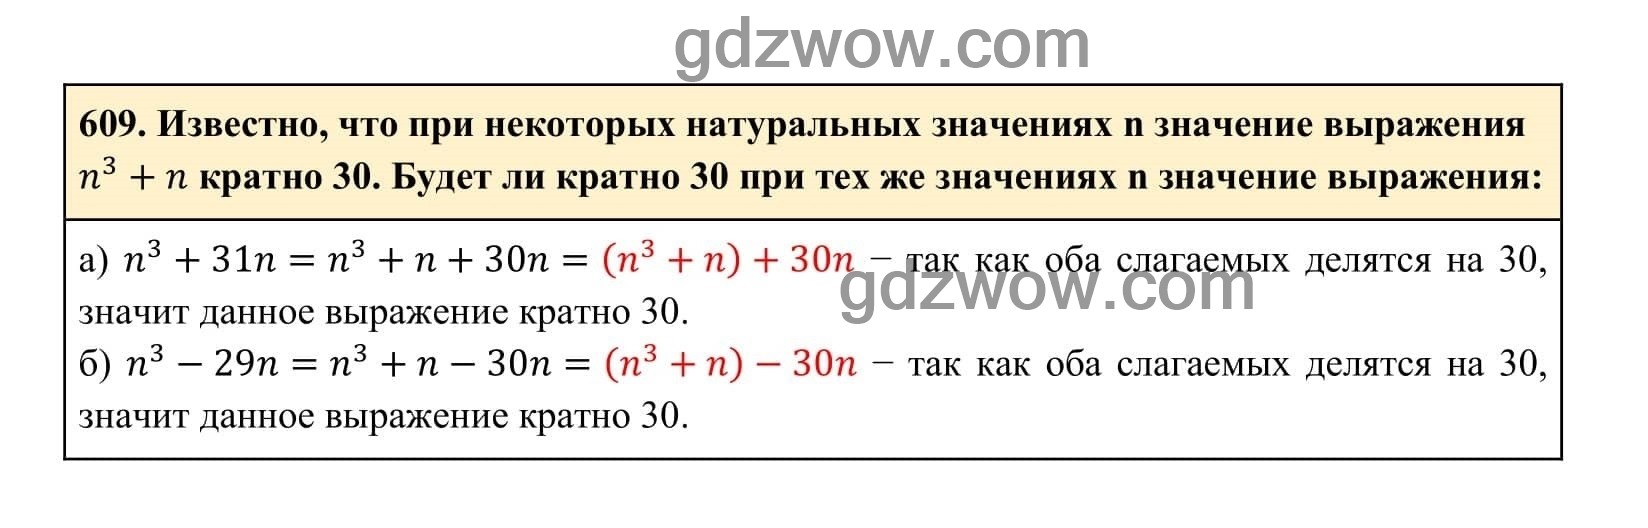 Упражнение 609 - ГДЗ по Алгебре 7 класс Учебник Макарычев (решебник) - GDZwow